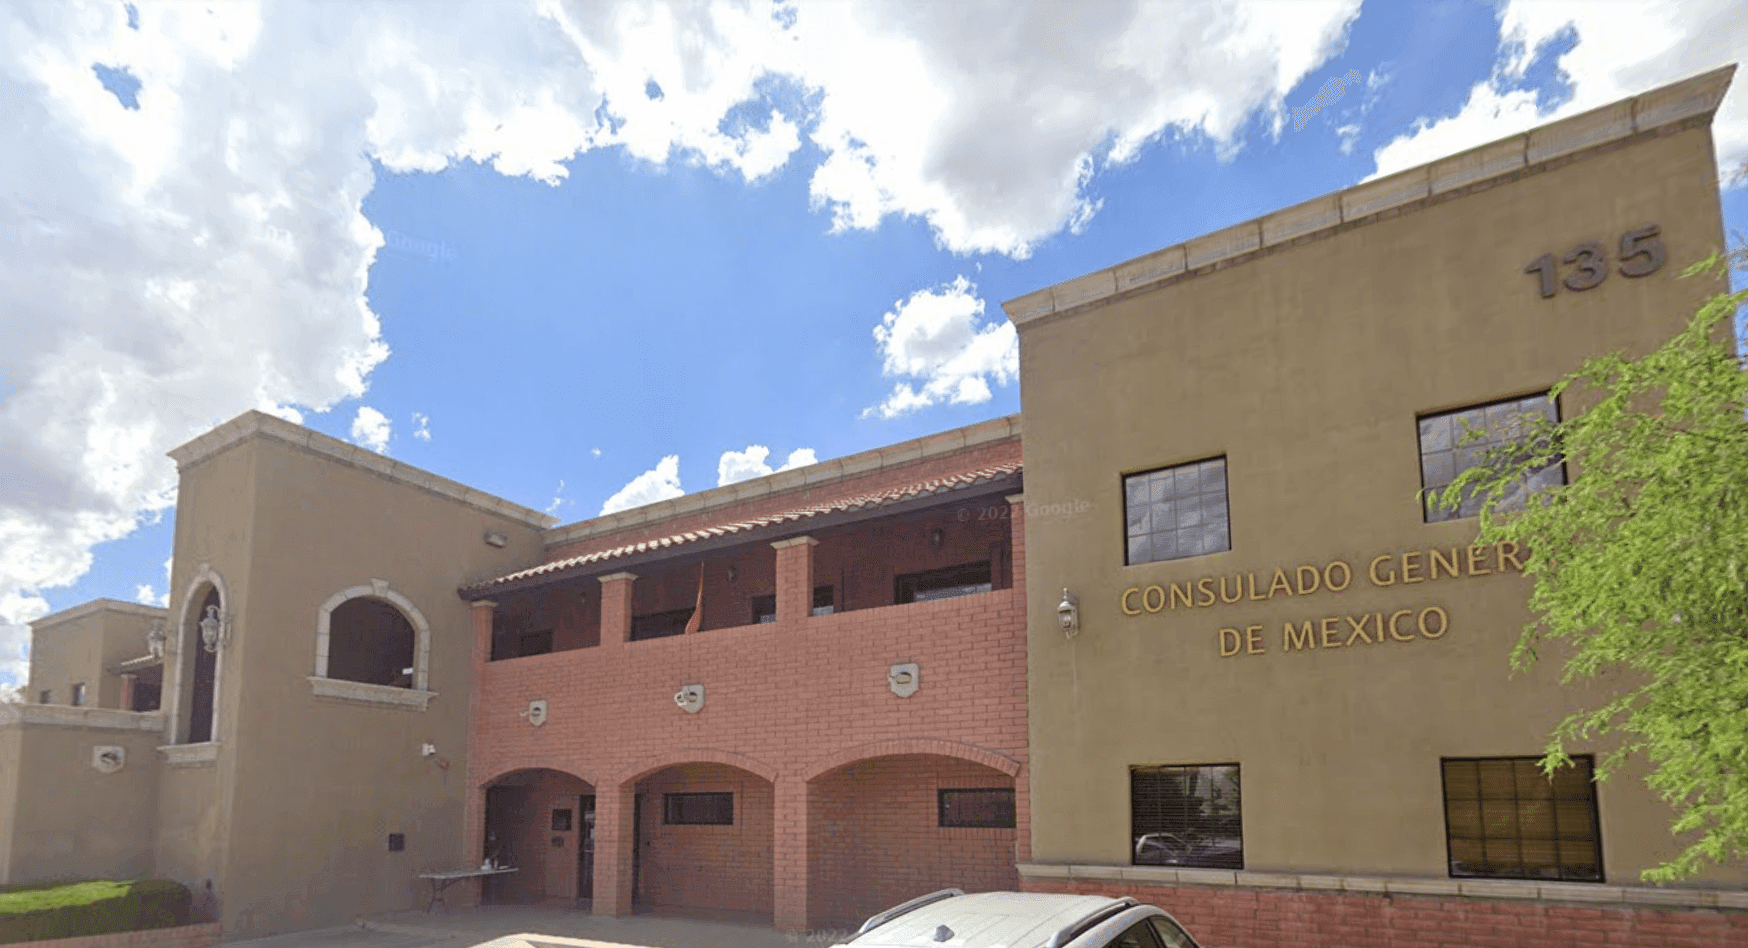 Consulado General de México de Nogales